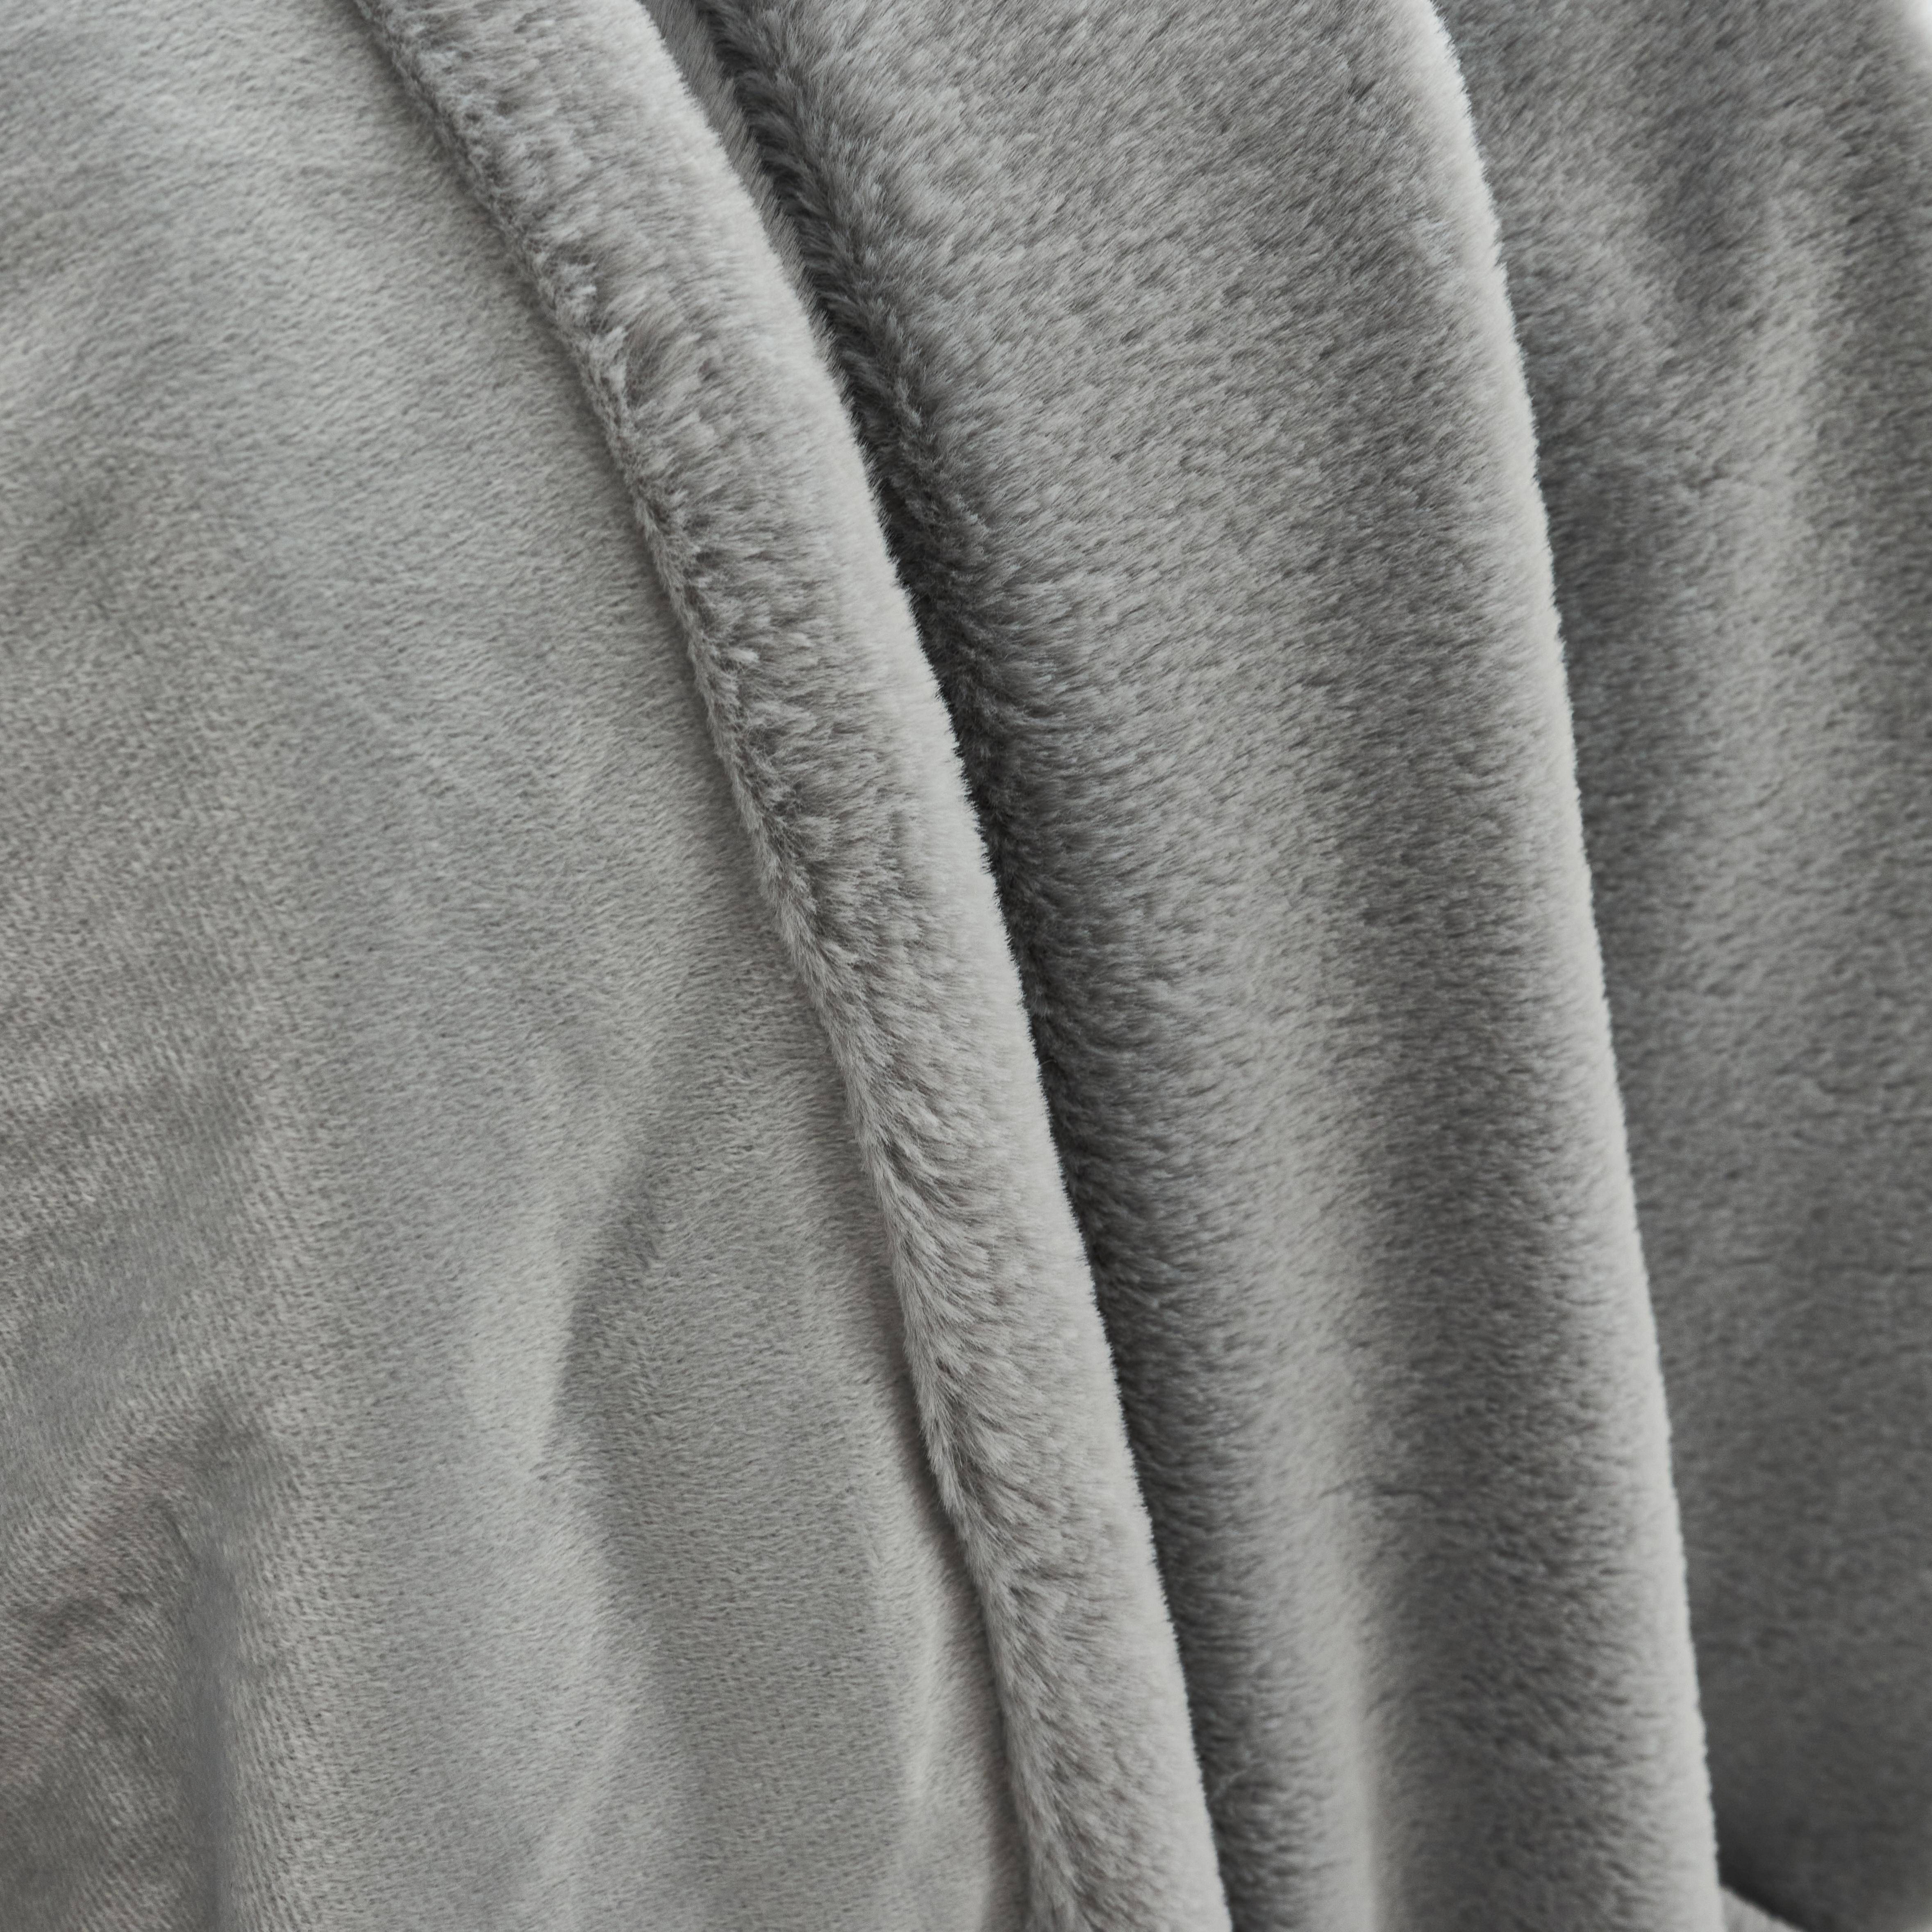 Plaid fausse fourrure gris clair poil long doublure polaire 160 x 230cm - LAPONIE,sweeek,Photo2